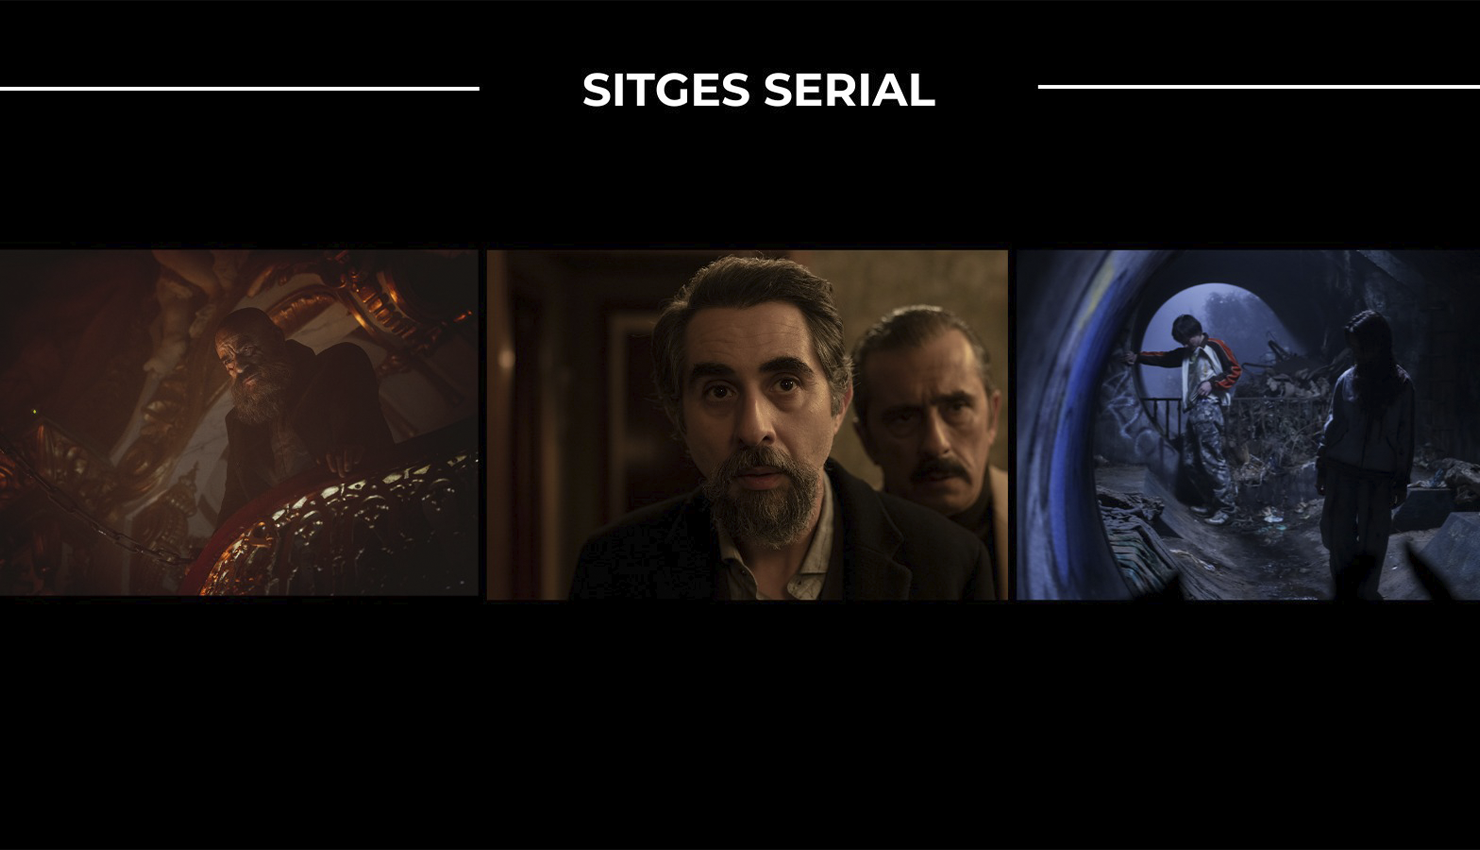 series-sitges-cine-magazinehorse